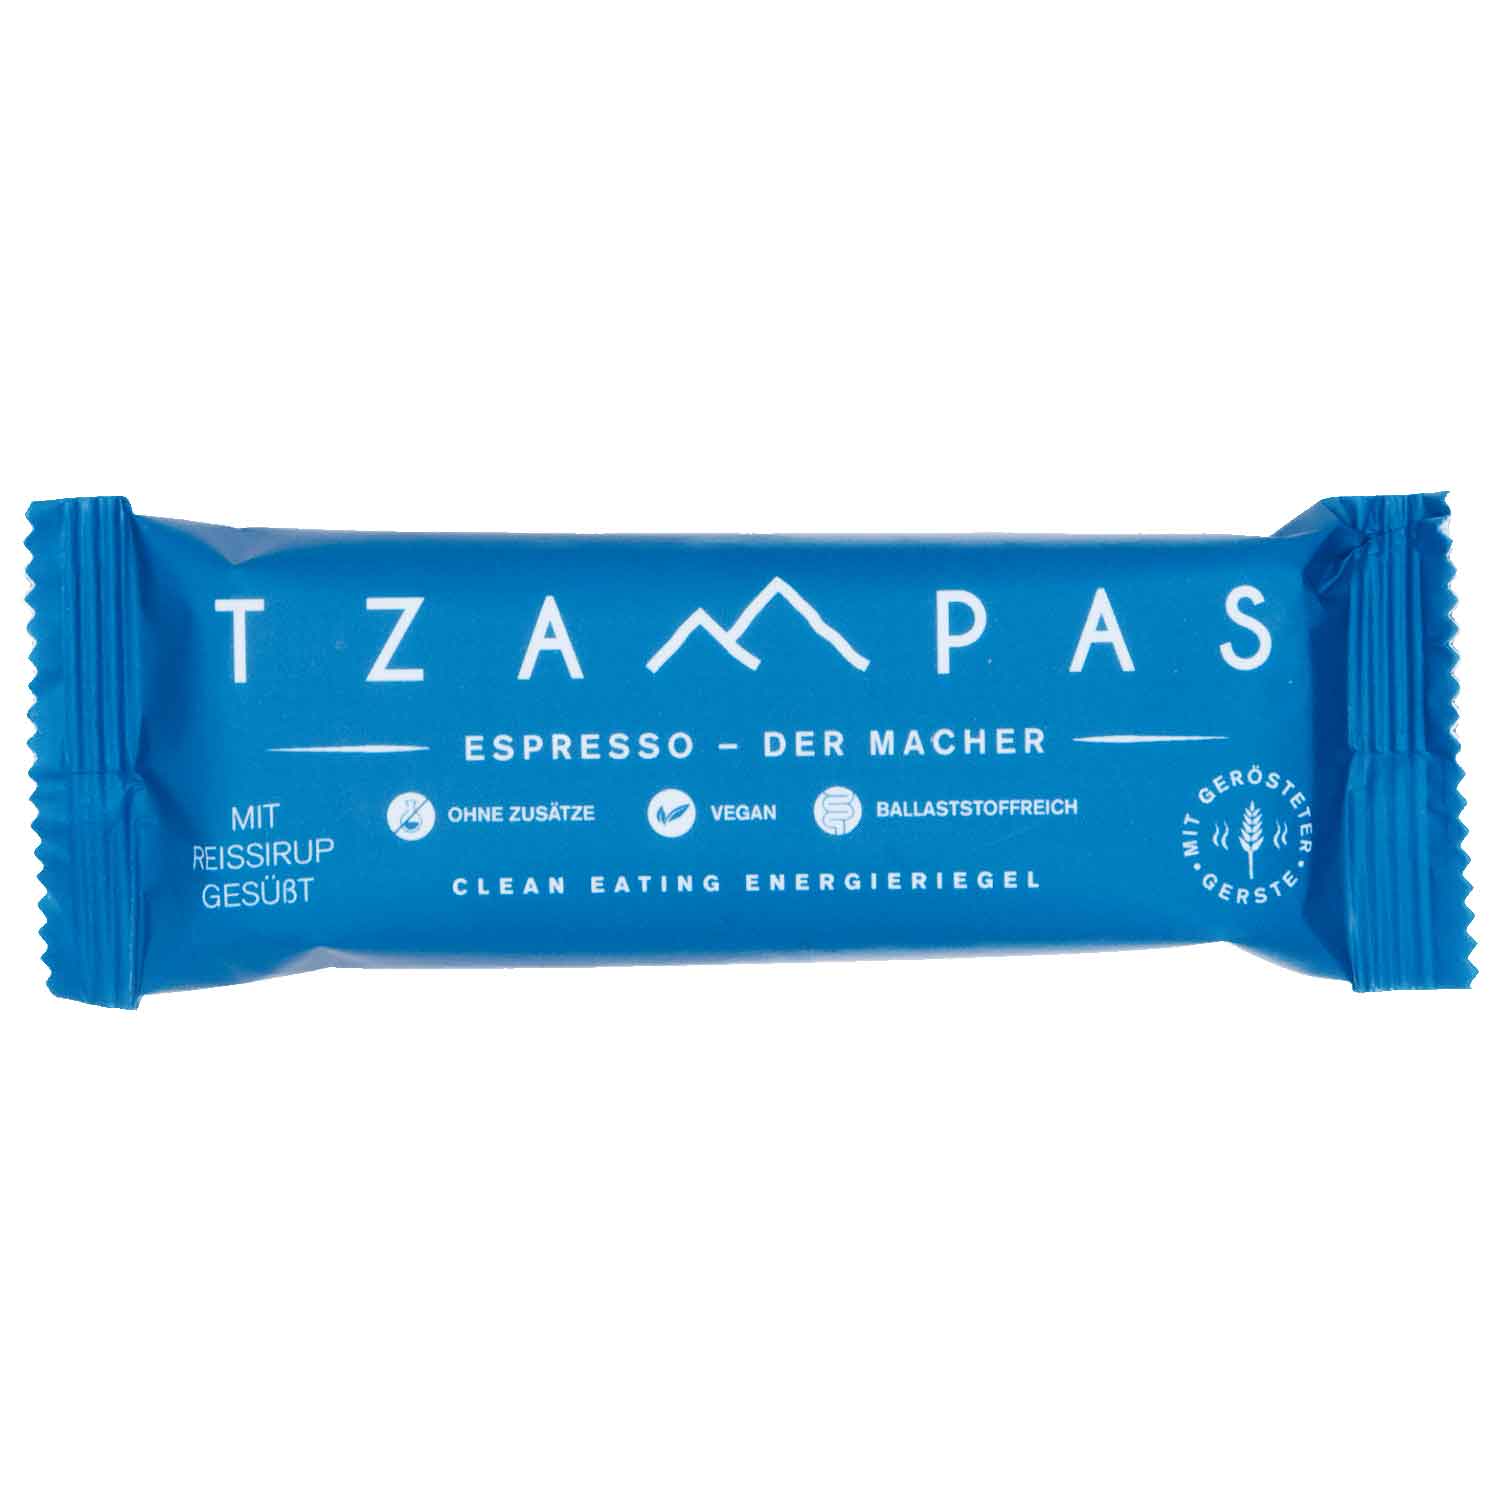 Produktbild von TZAMPAS BIO Espresso - Der Macher - Energieriegel - 40g